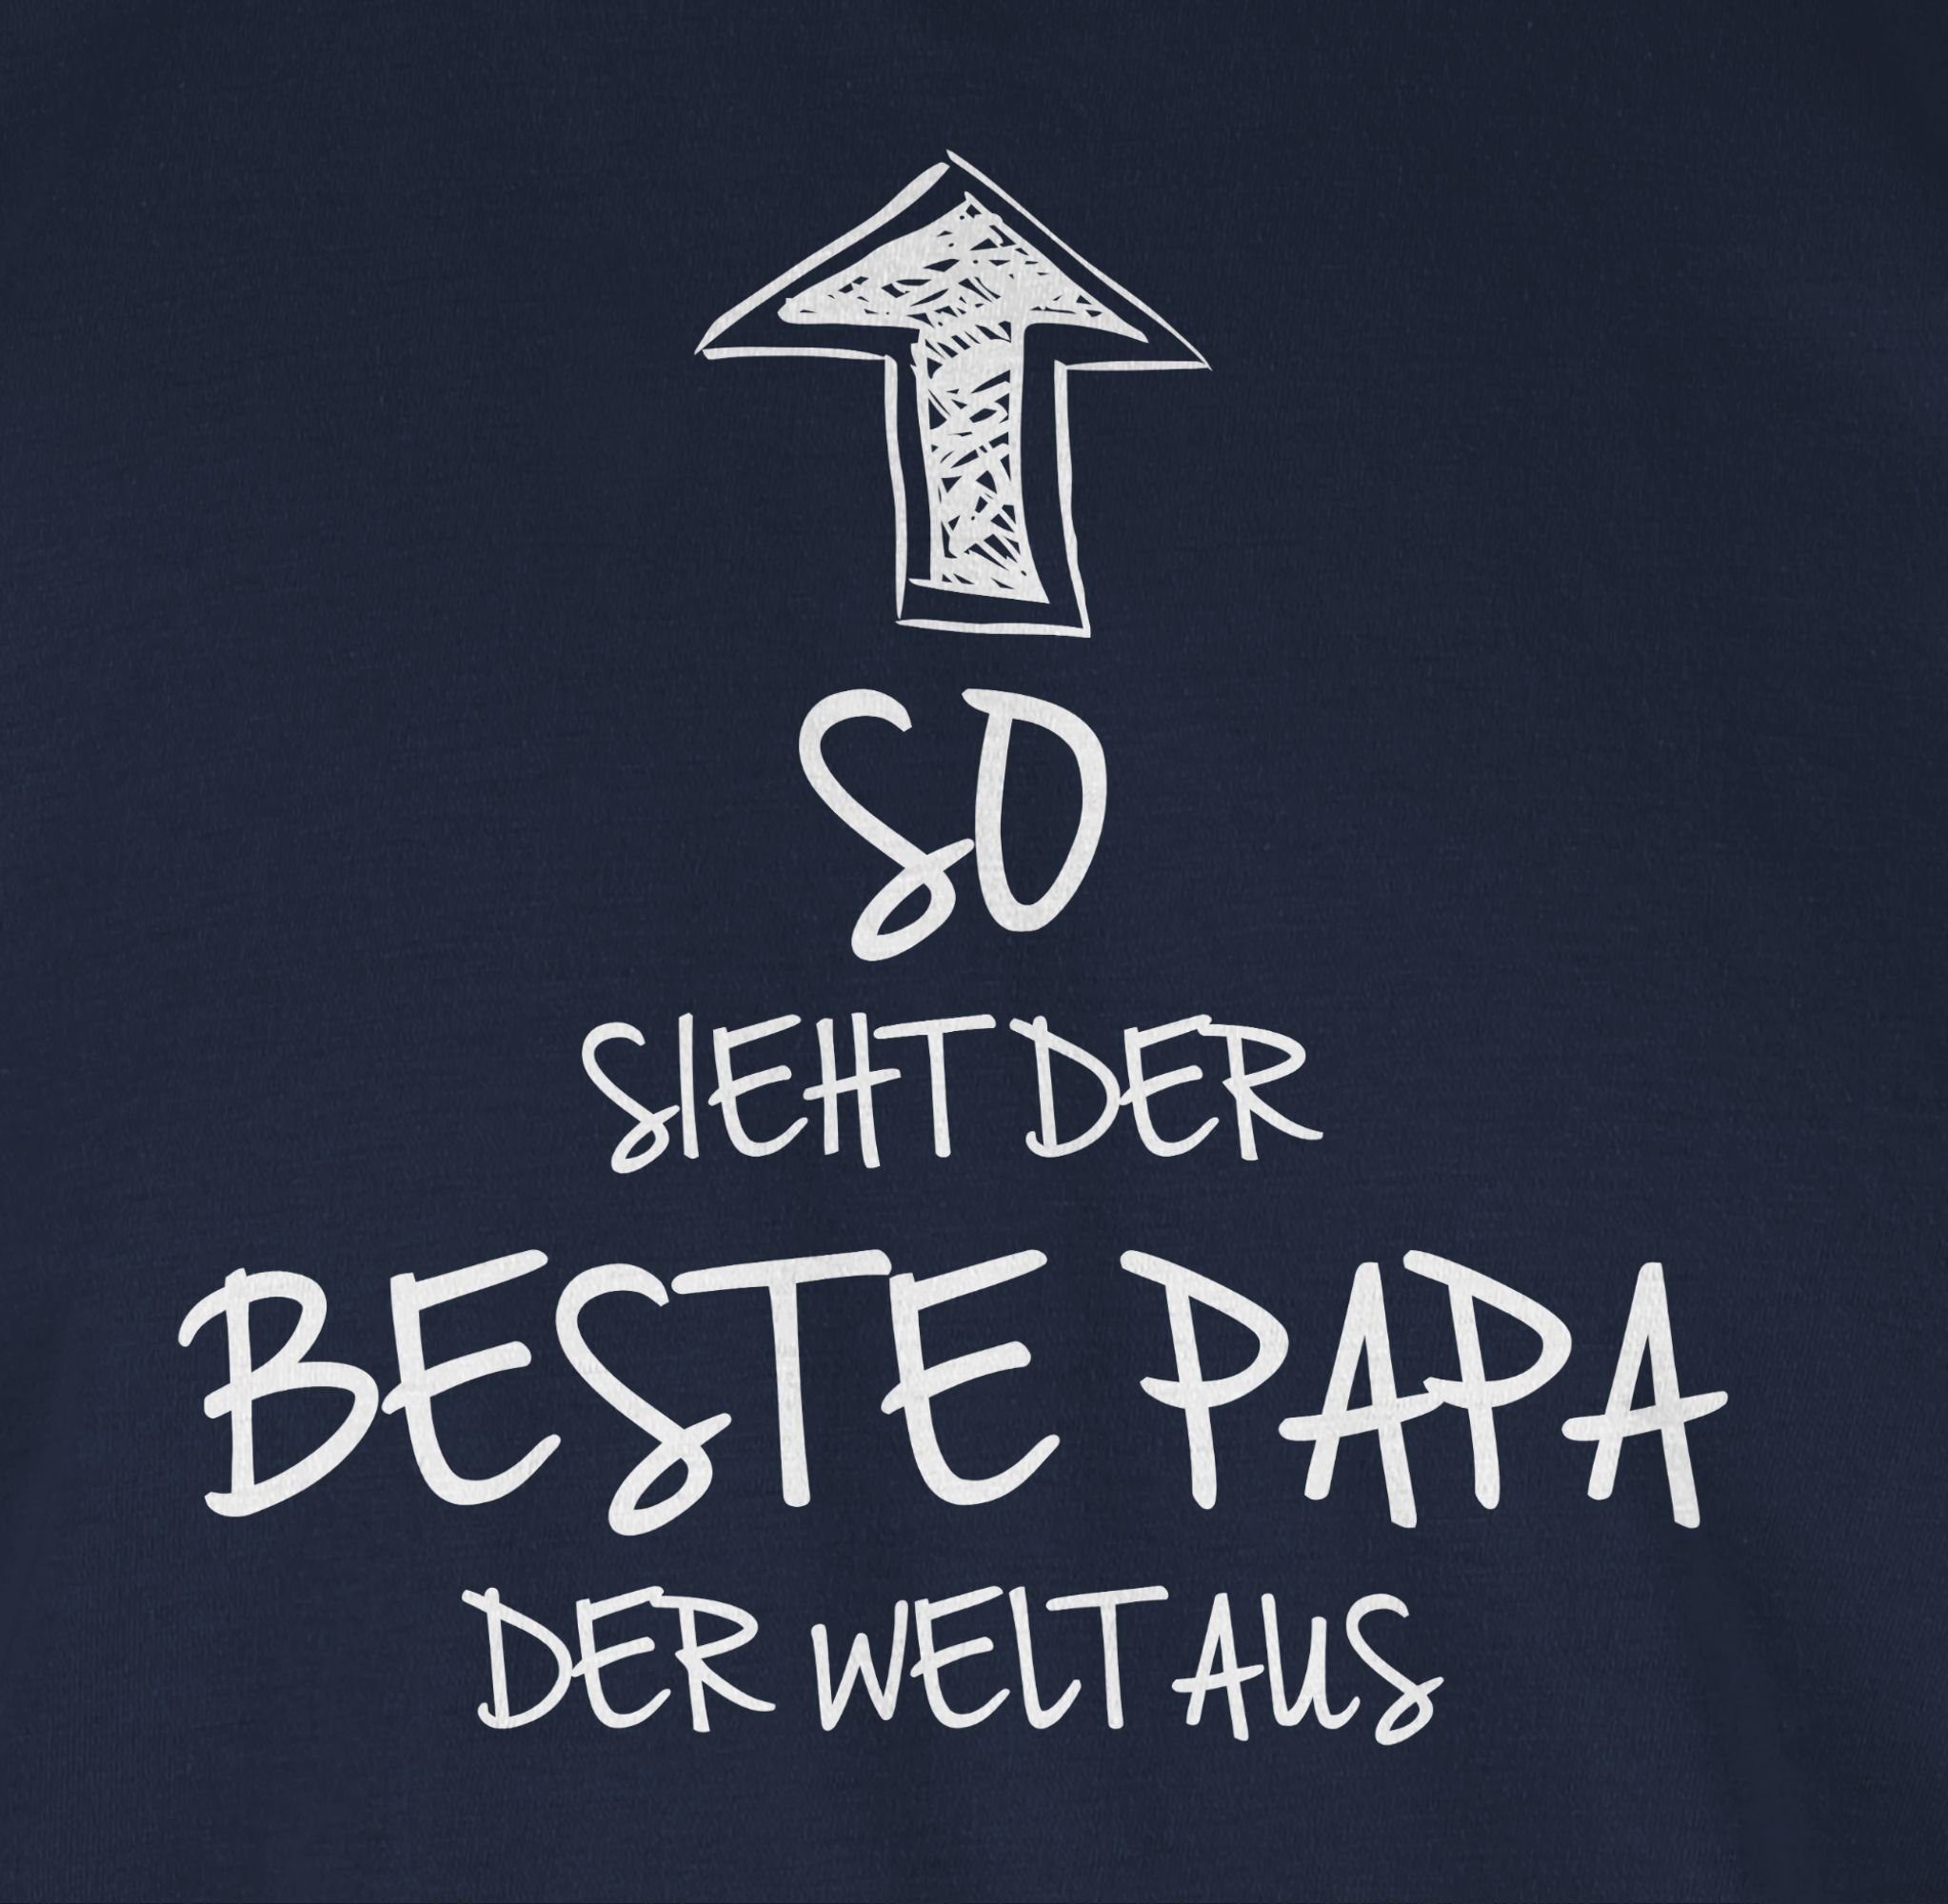 Papa T-Shirt der Vatertag Navy Papa für Shirtracer Welt der beste So Blau aus sieht 02 Geschenk